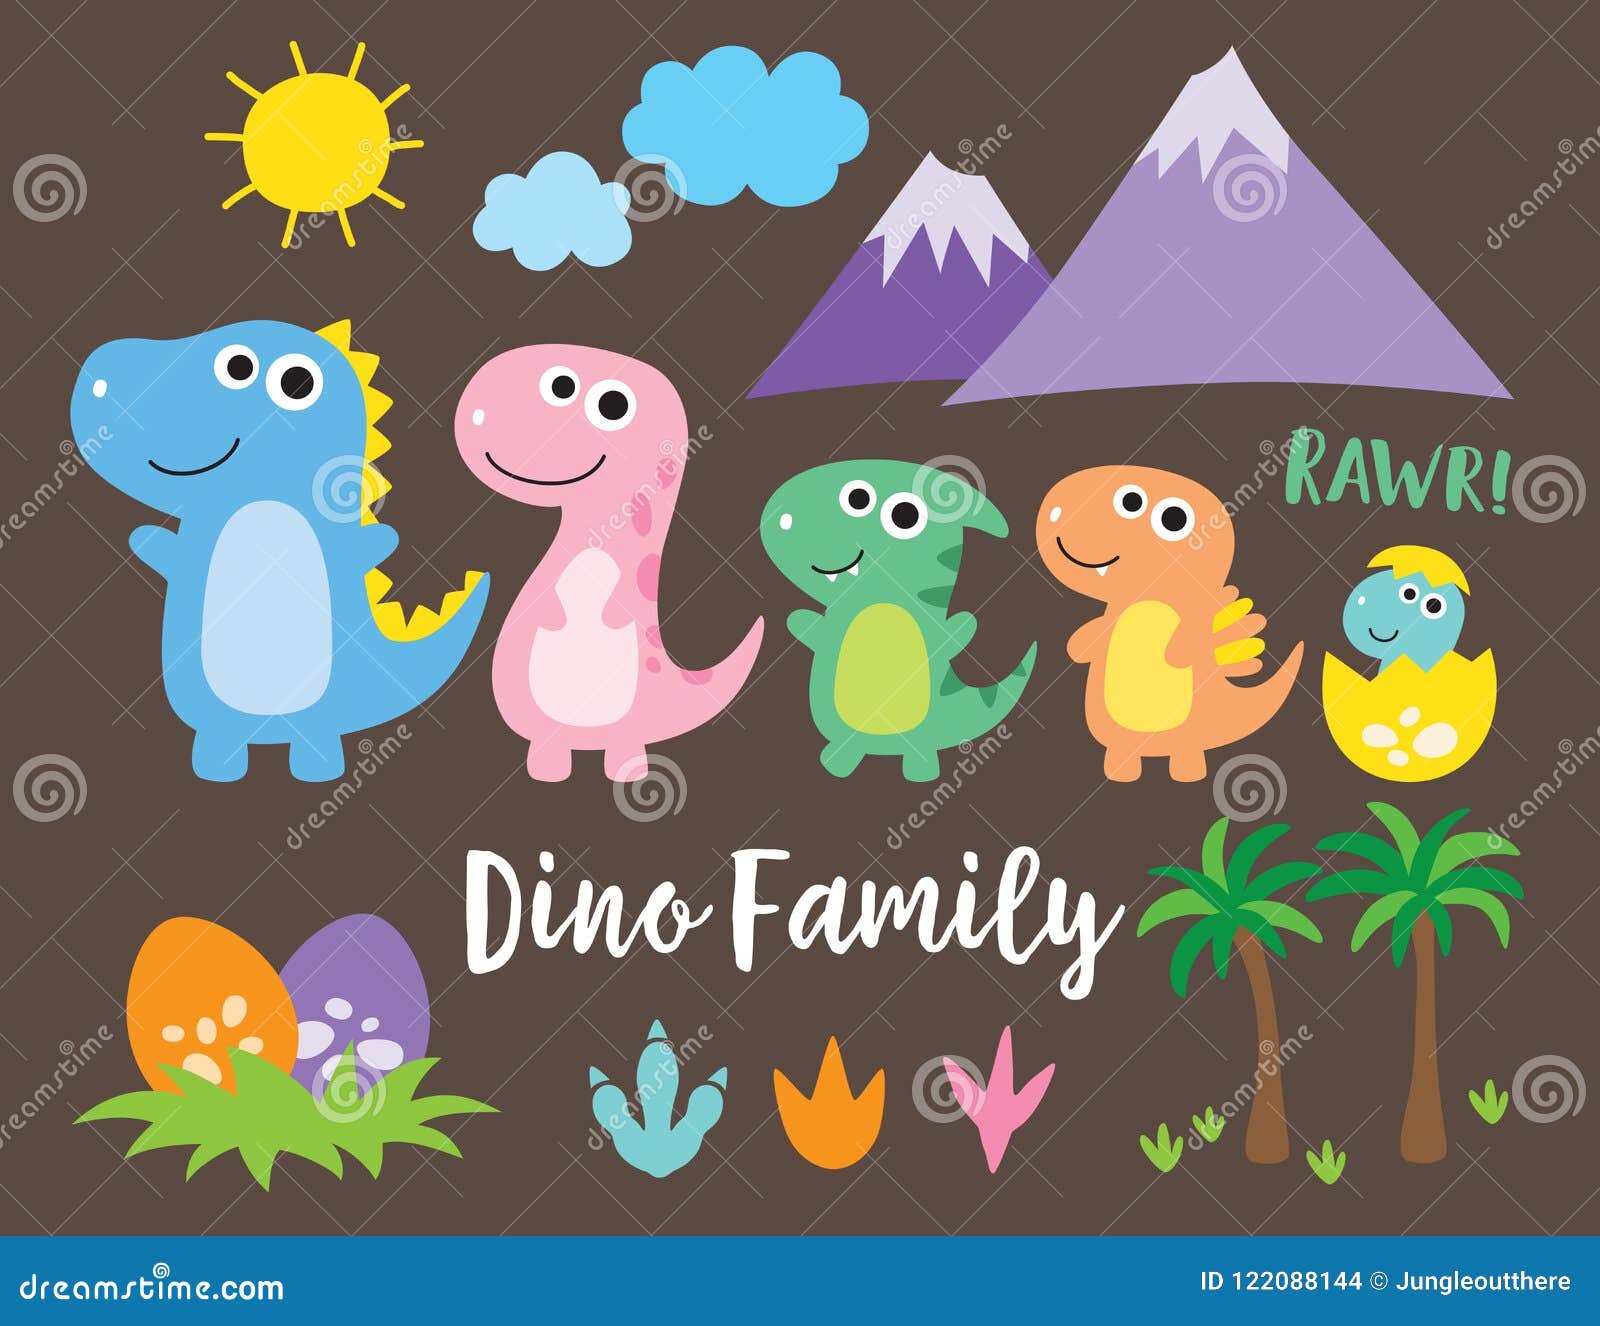 Dinosaur Family Stock Illustrations – 1,226 Dinosaur Family Stock  Illustrations, Vectors & Clipart - Dreamstime